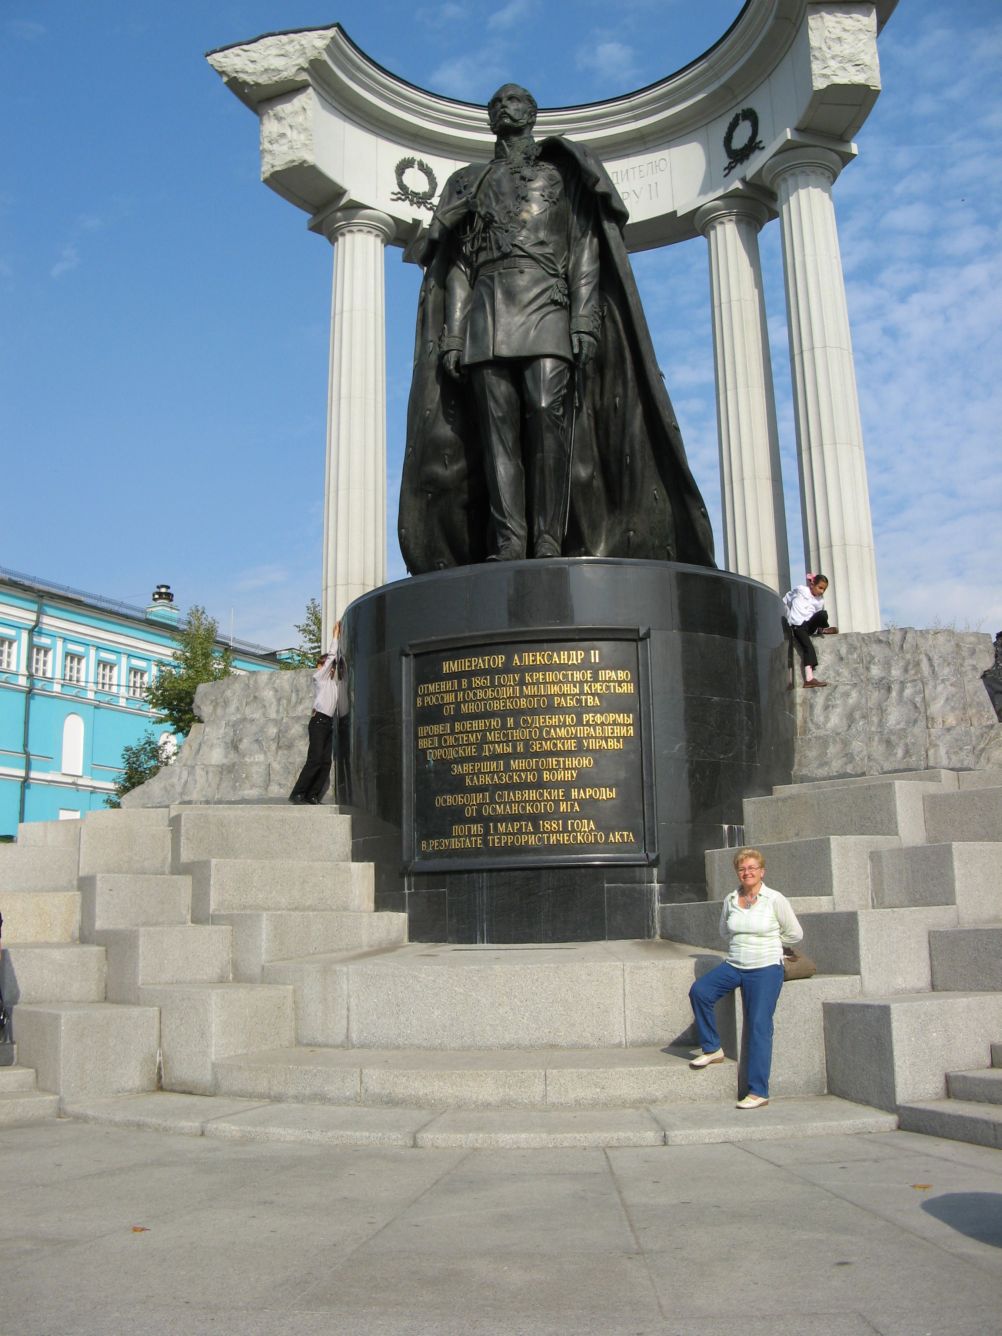 Monoment of Alexander II